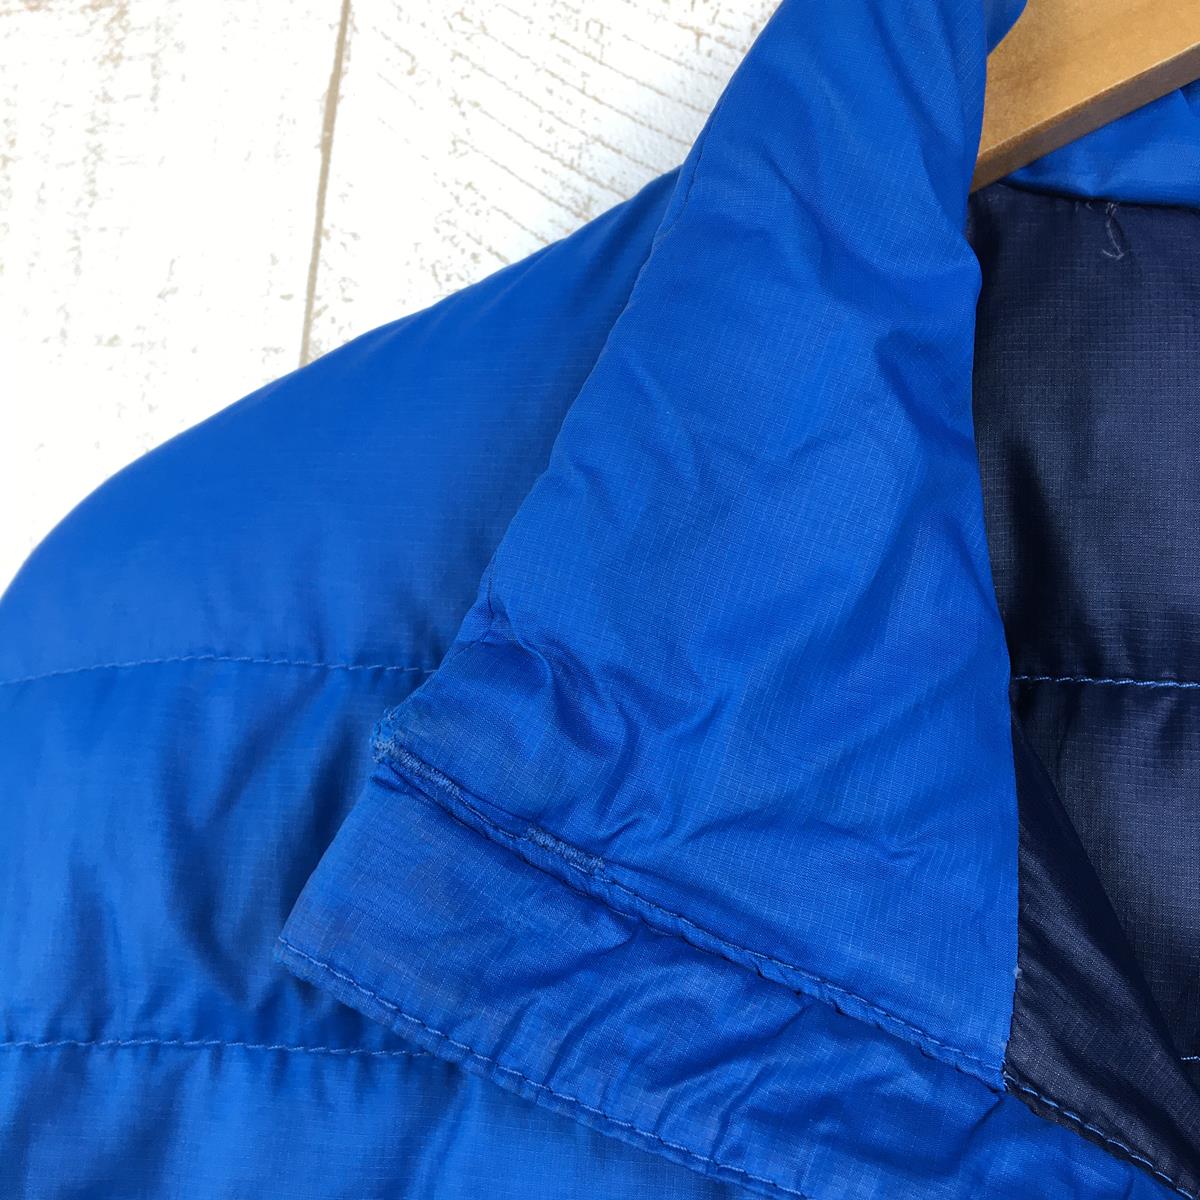 【MEN's S】 パタゴニア 2009 ダウン セーター Down Sweater 800FP ダウン ジャケット 生産終了モデル 入手困難 PATAGONIA 84673 ブルー系